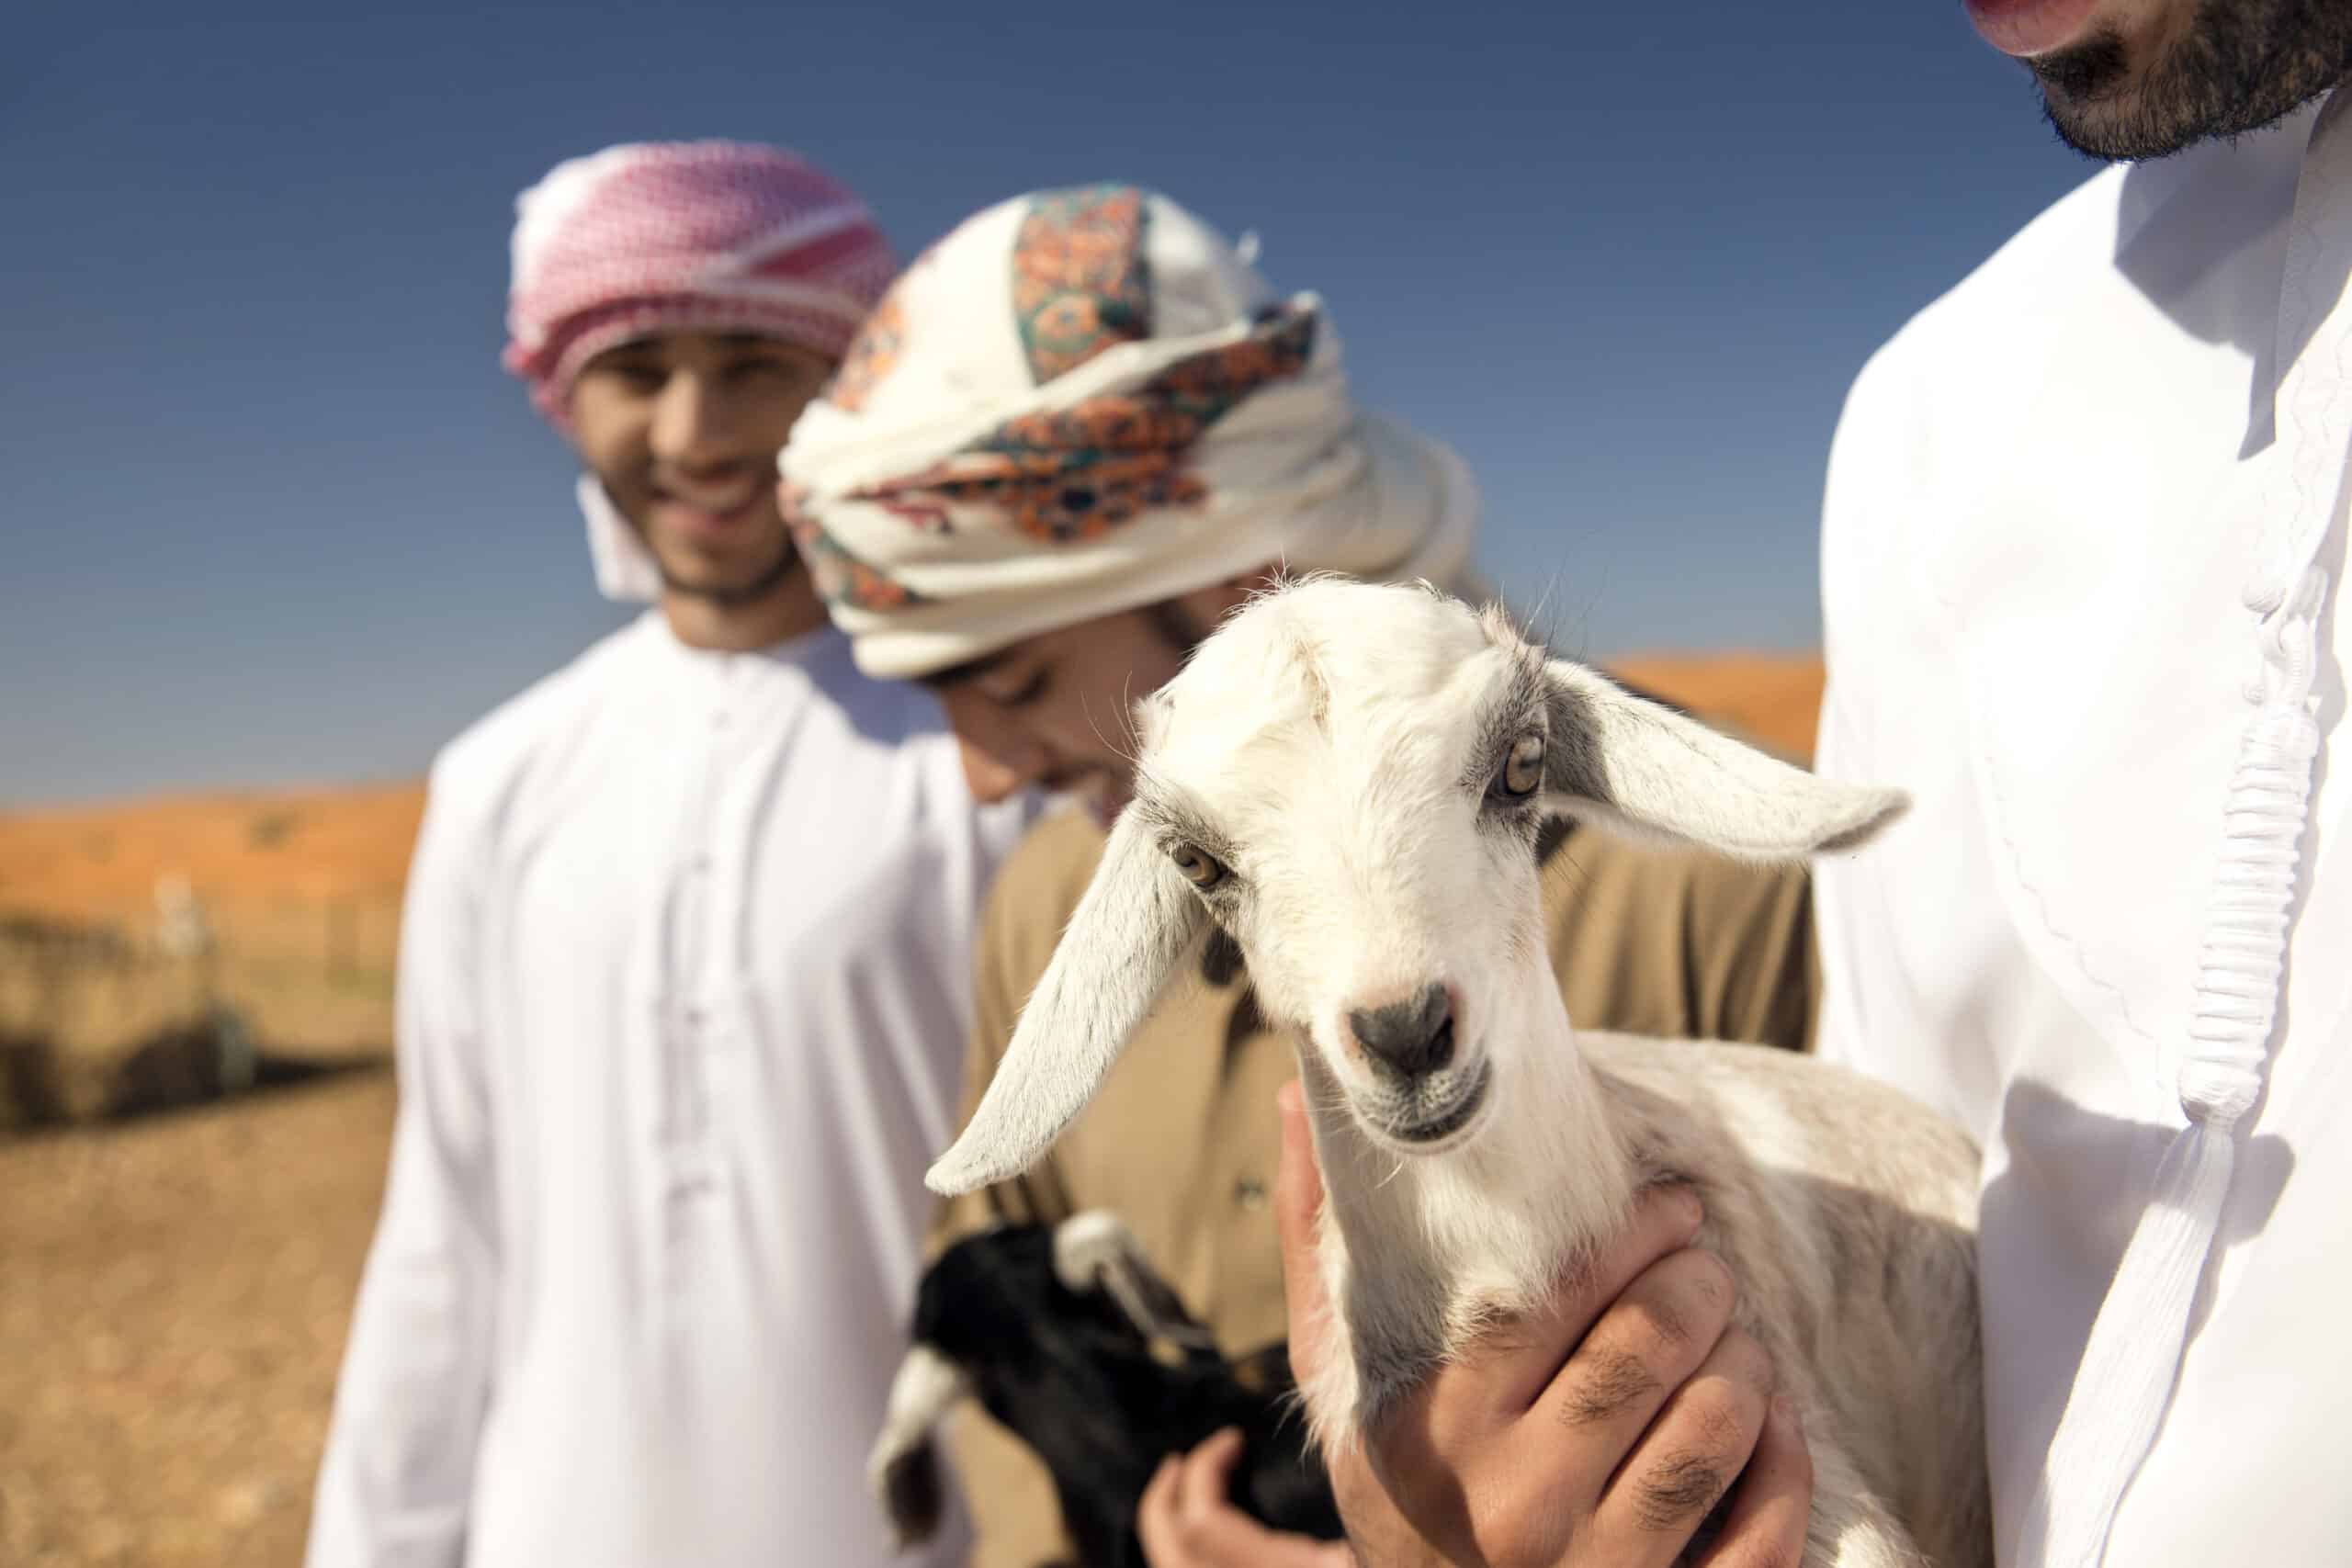 Drei Männer in traditioneller Kleidung stehen in einer Wüstenlandschaft und lächeln, während einer von ihnen liebevoll eine kleine weiße Ziege hält. © Fotografie Tomas Rodriguez